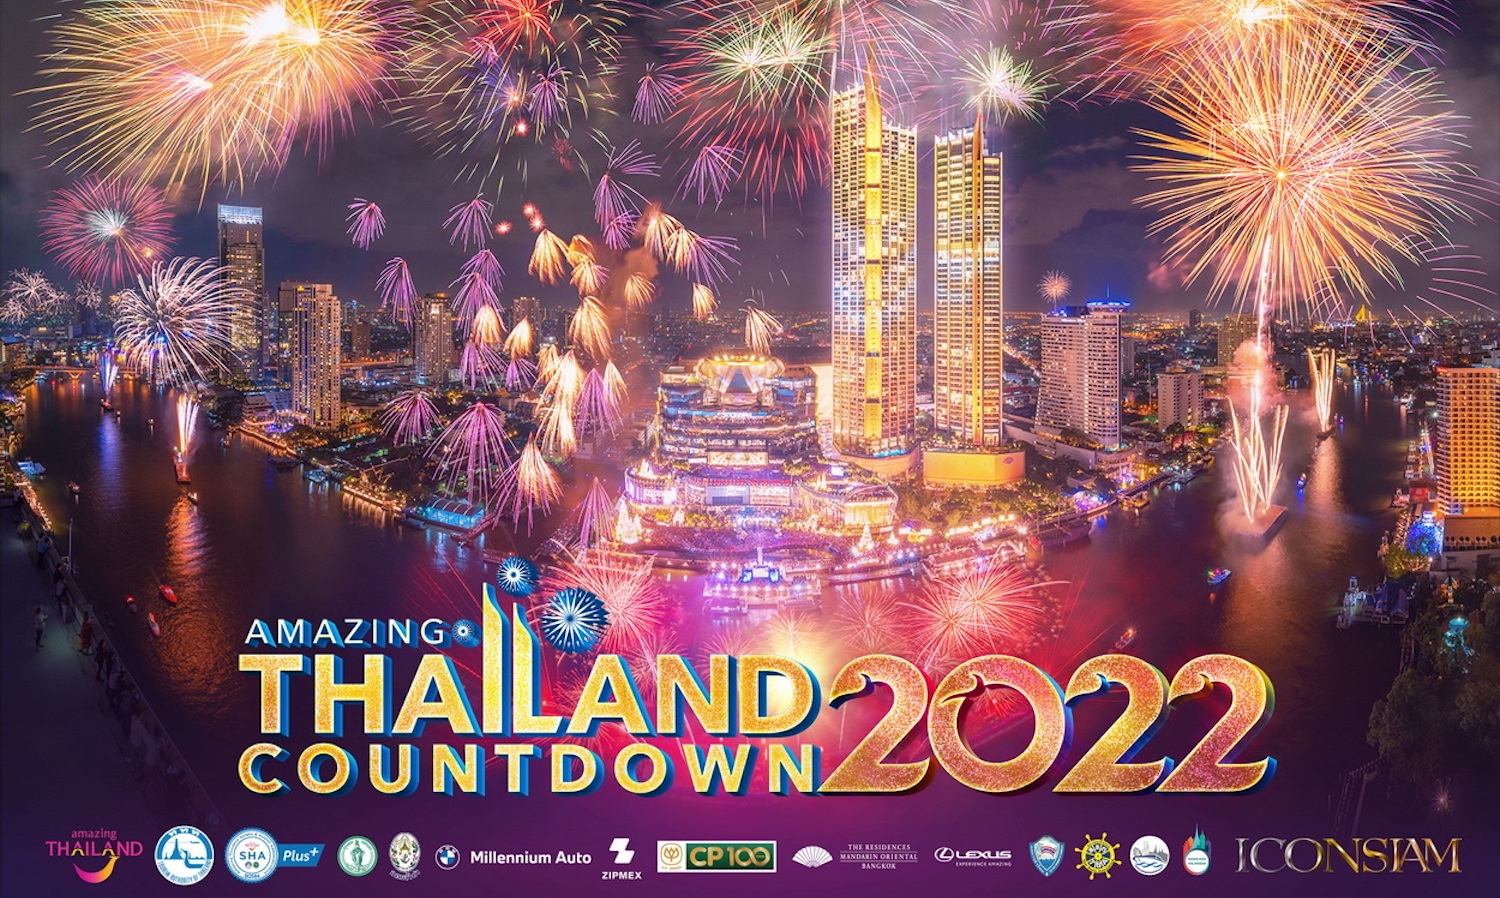 ไอคอนสยาม สร้างมหาปรากฏการณ์มหัศจรรย์งานเคาท์ดาวน์ระดับโลก Amazing Thailand Countdown 2022 